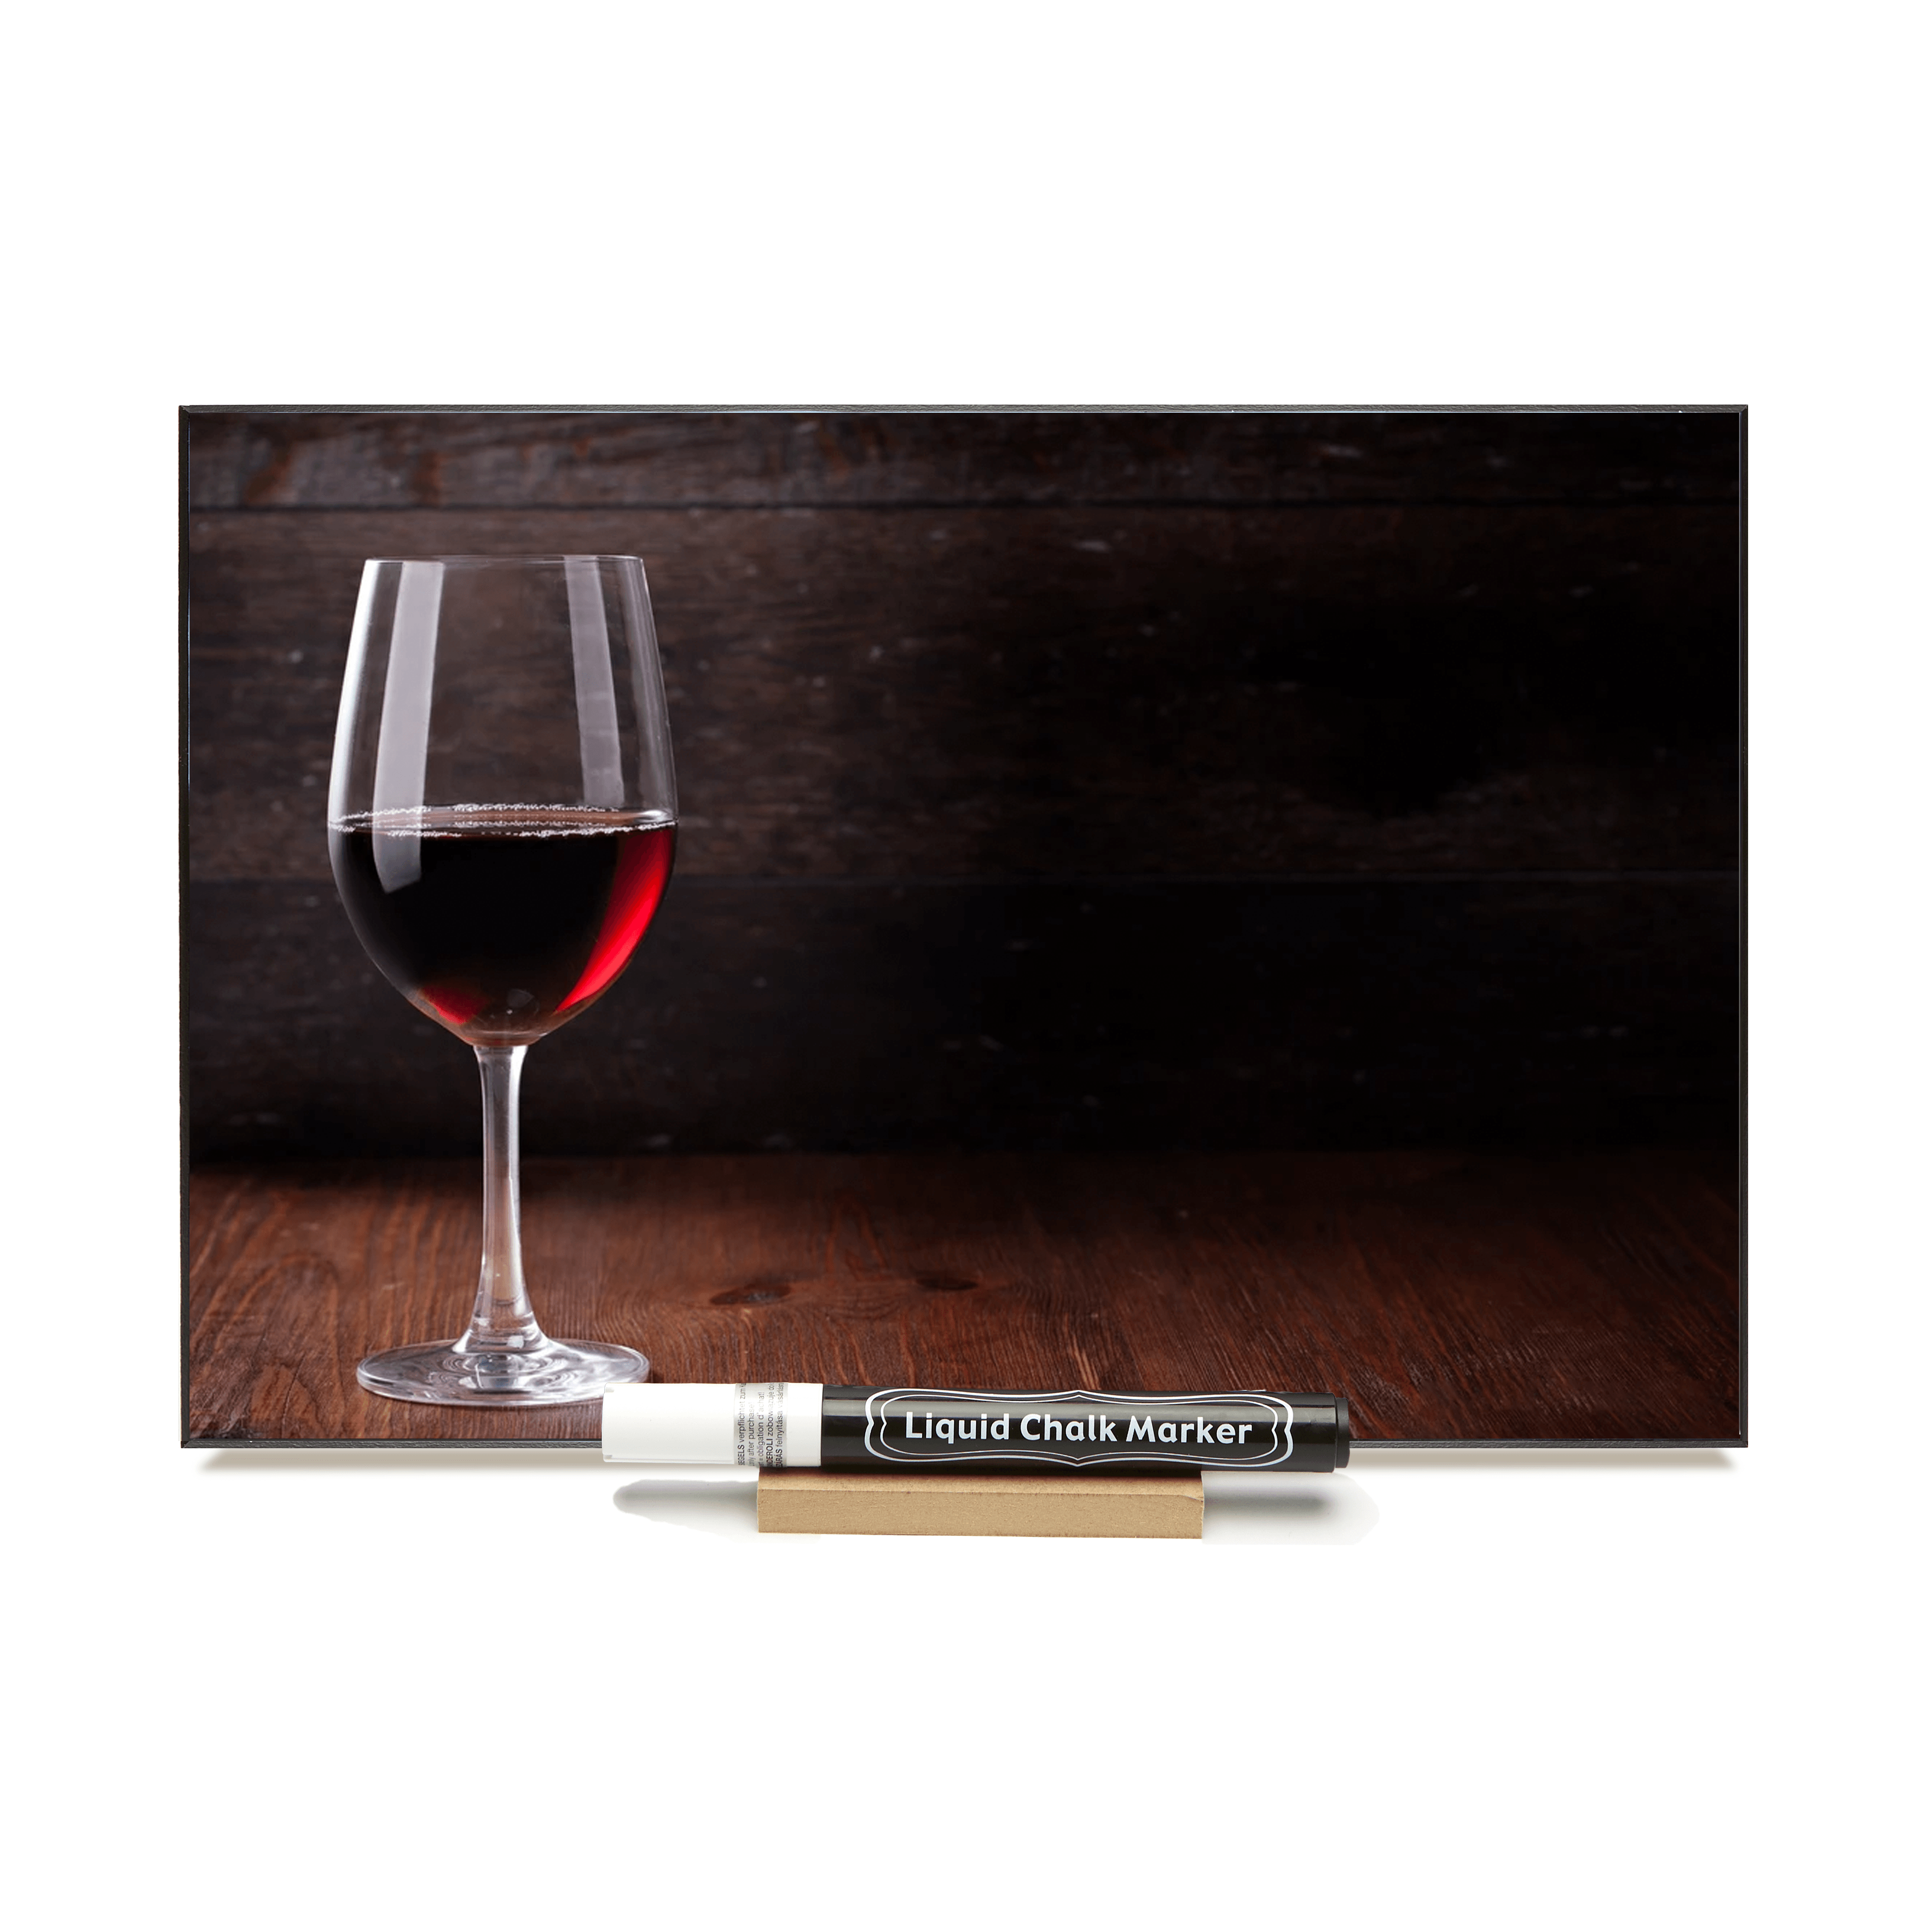 "Red Wine Glass"  PHOTO CHALKBOARD - Includes Chalkboard, Chalk Marker